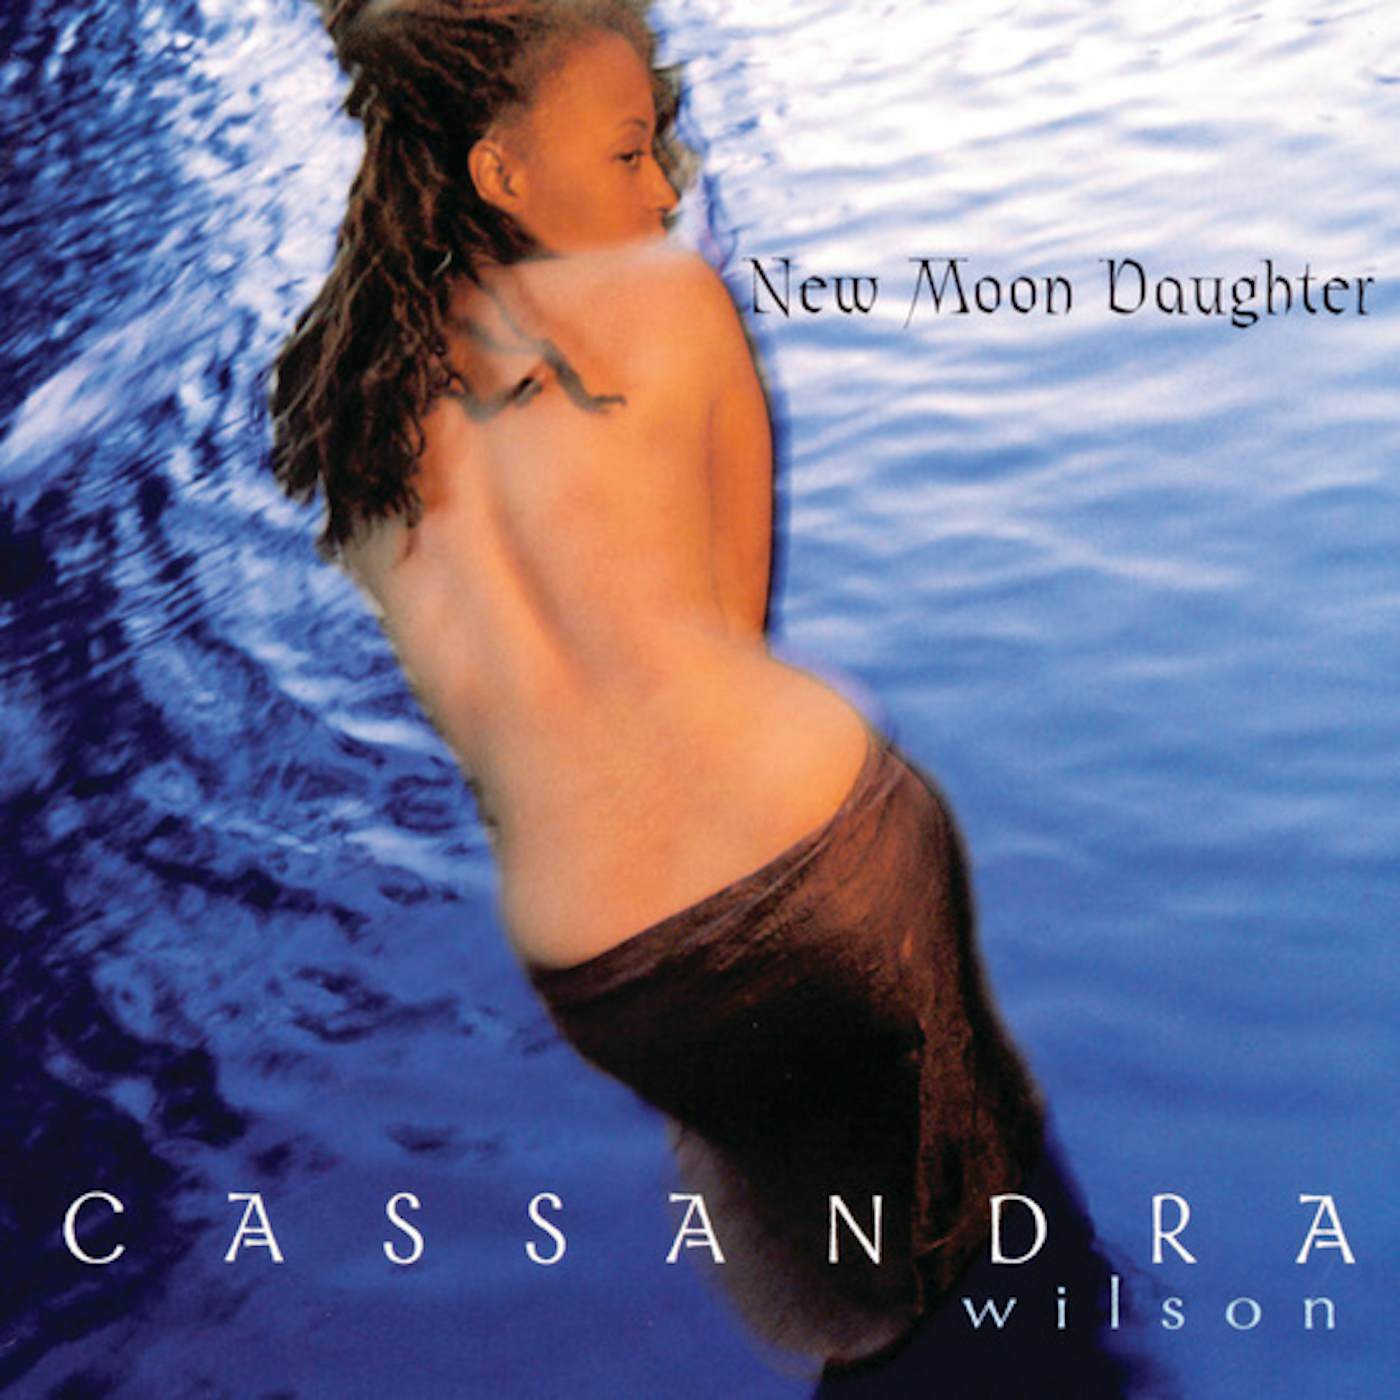 Cassandra Wilson New Moon Daughter Vinyl Record